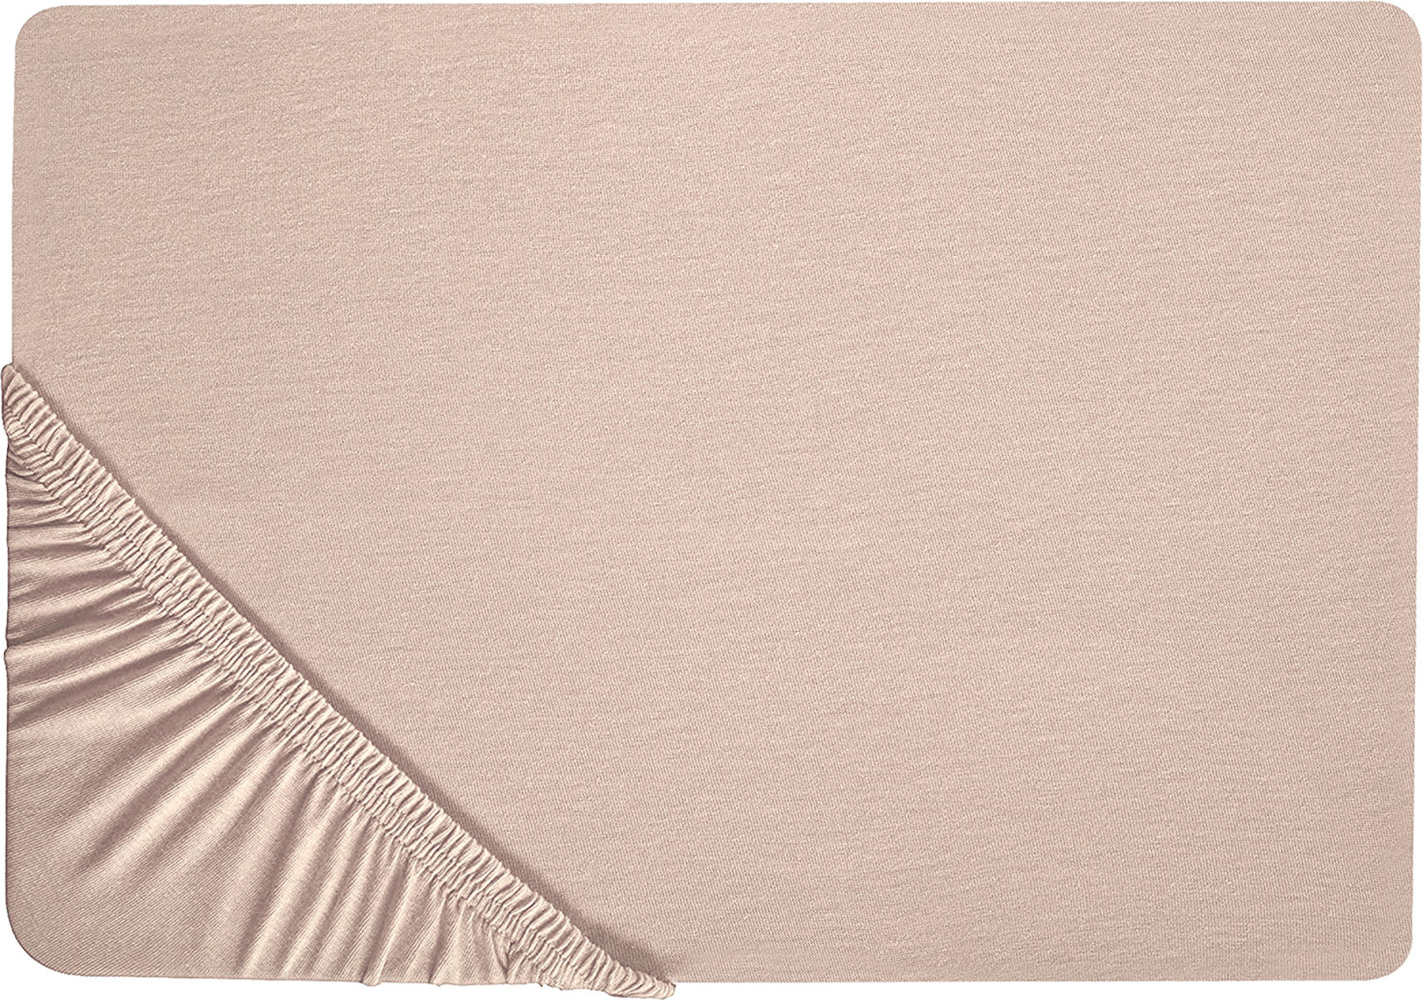 Spannbettlaken 'Hofuf' Beige Baumwolle mit Gummizug 180 x 200 cm Betttuch für Klassische Hohe Matratze Atmungsaktiv Schlafzimmer Doppelbett Bild 1